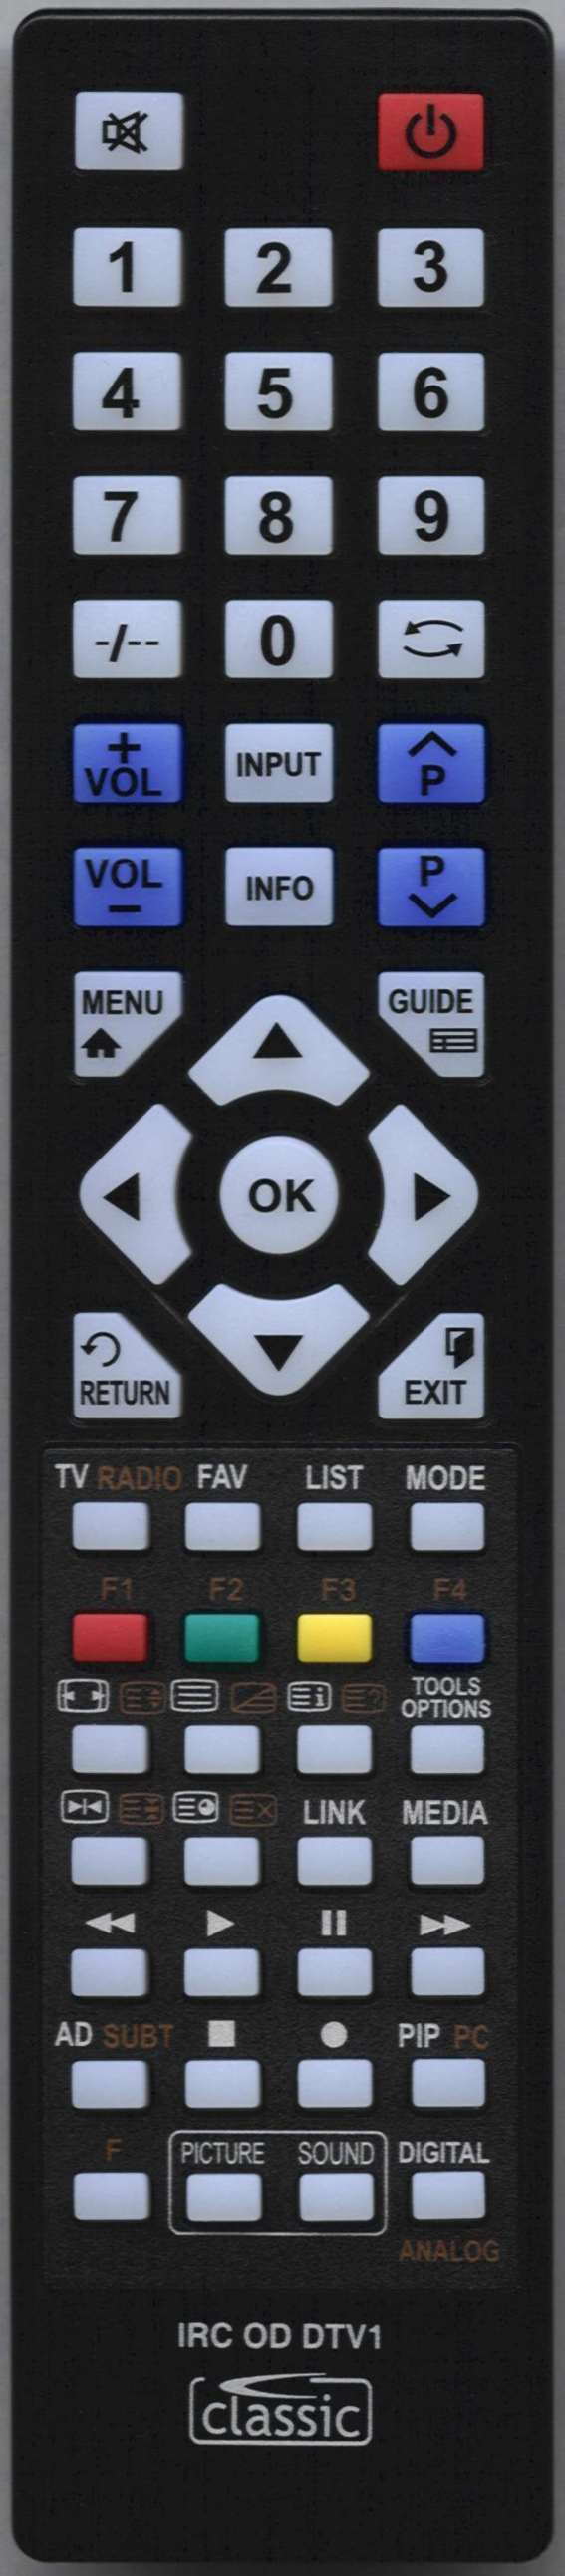 MATSUI TVR 2095TT Remote Control